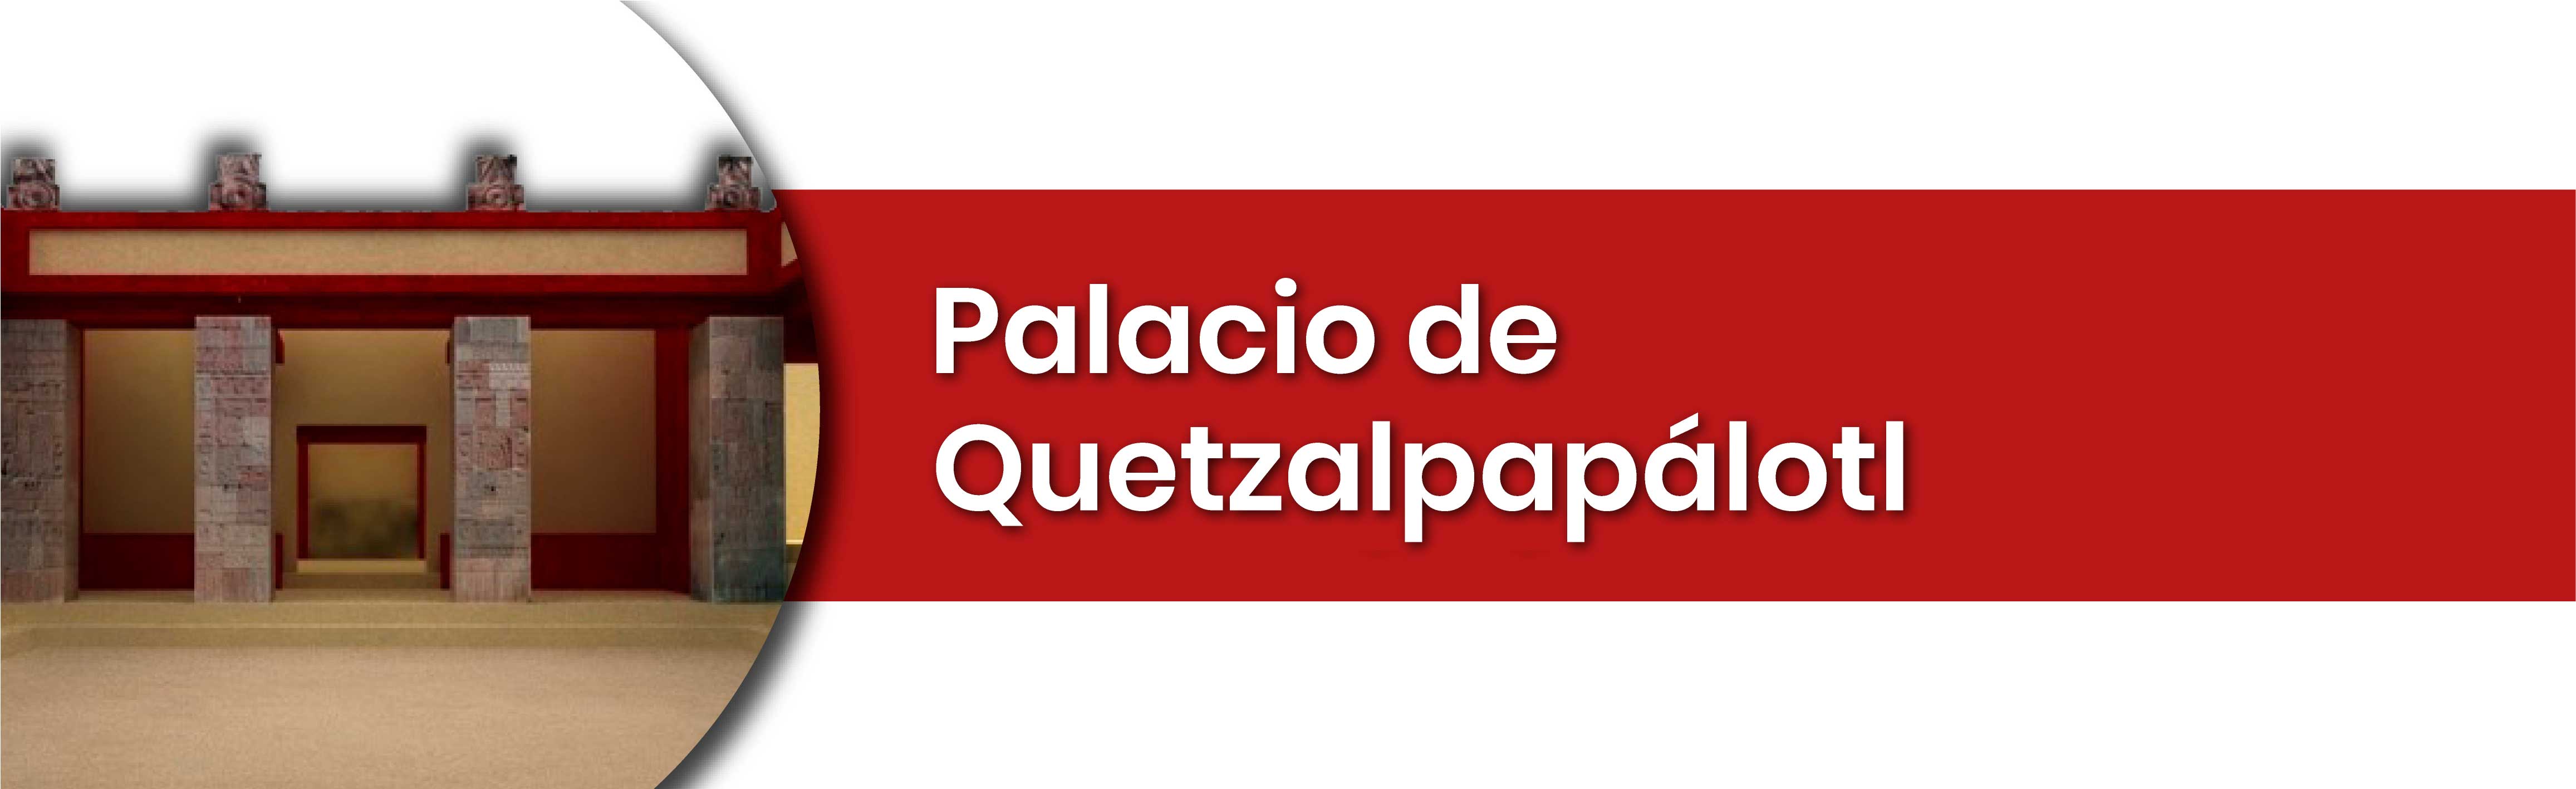 Palacio Quetzalpapálotl